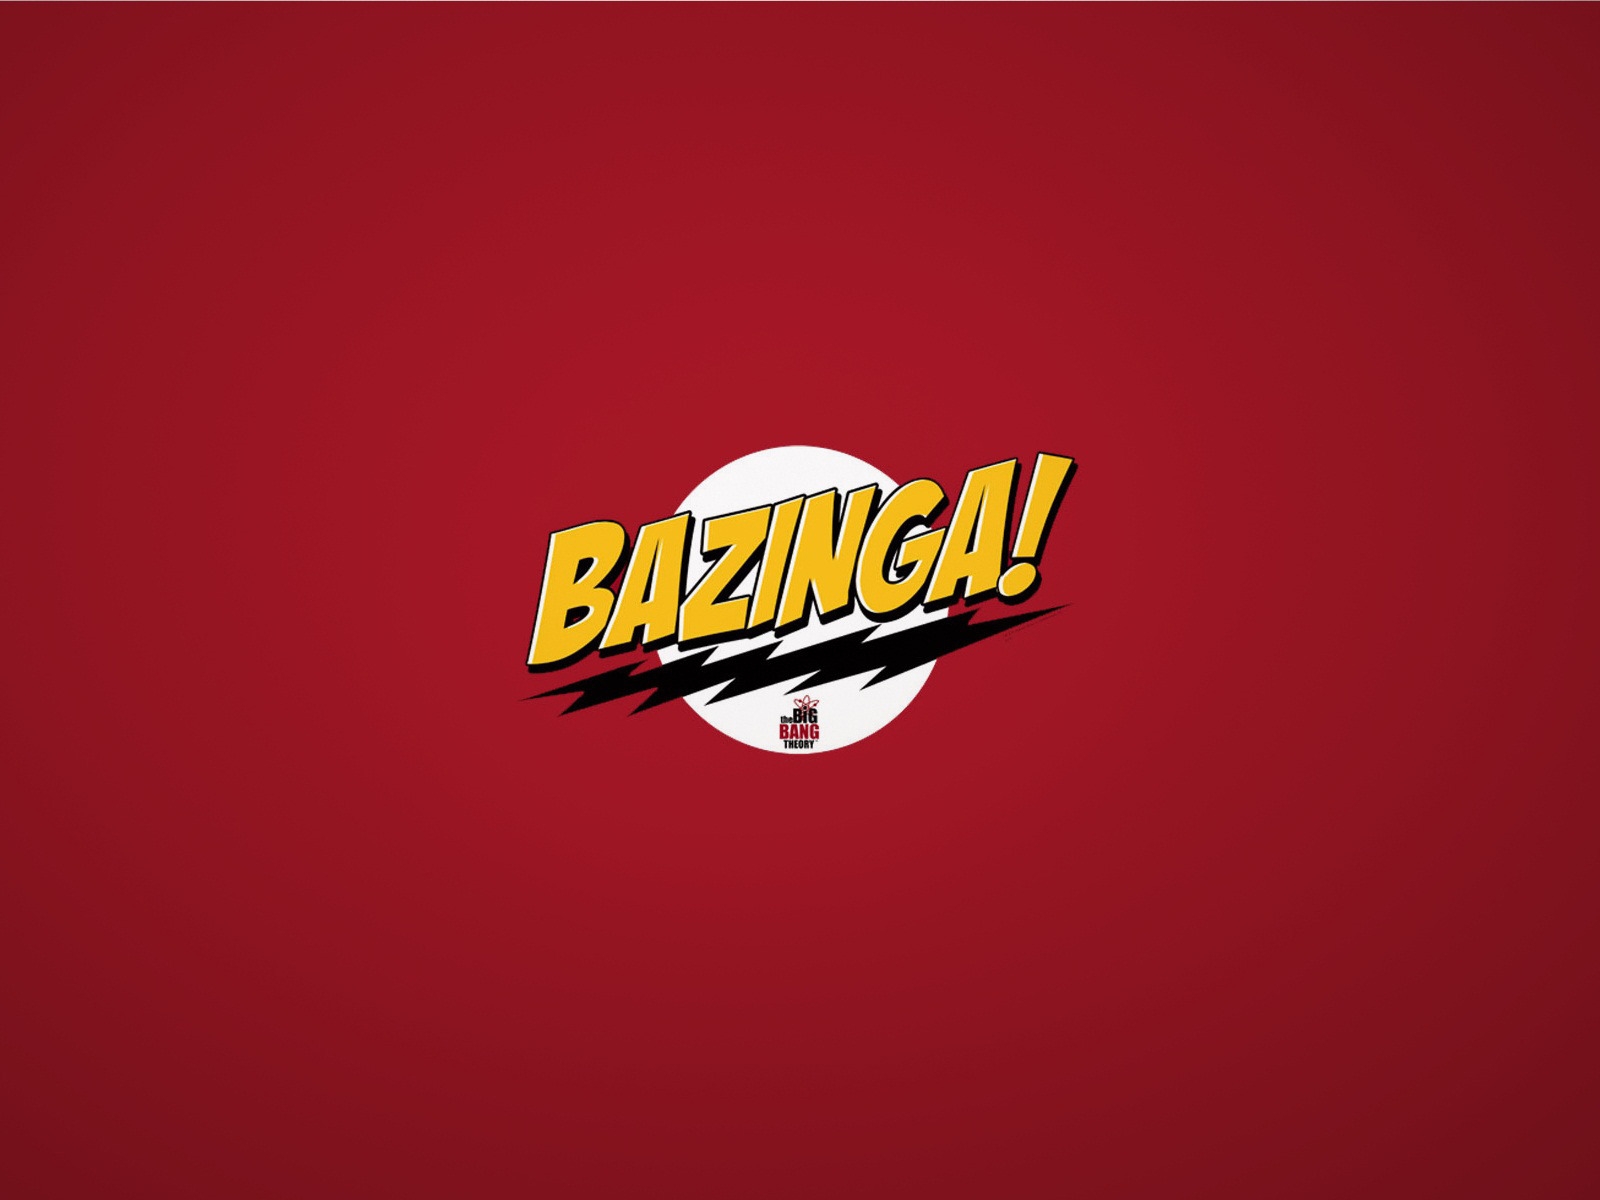 The Big Bang Theory Bazinga for 1600 x 1200 resolution